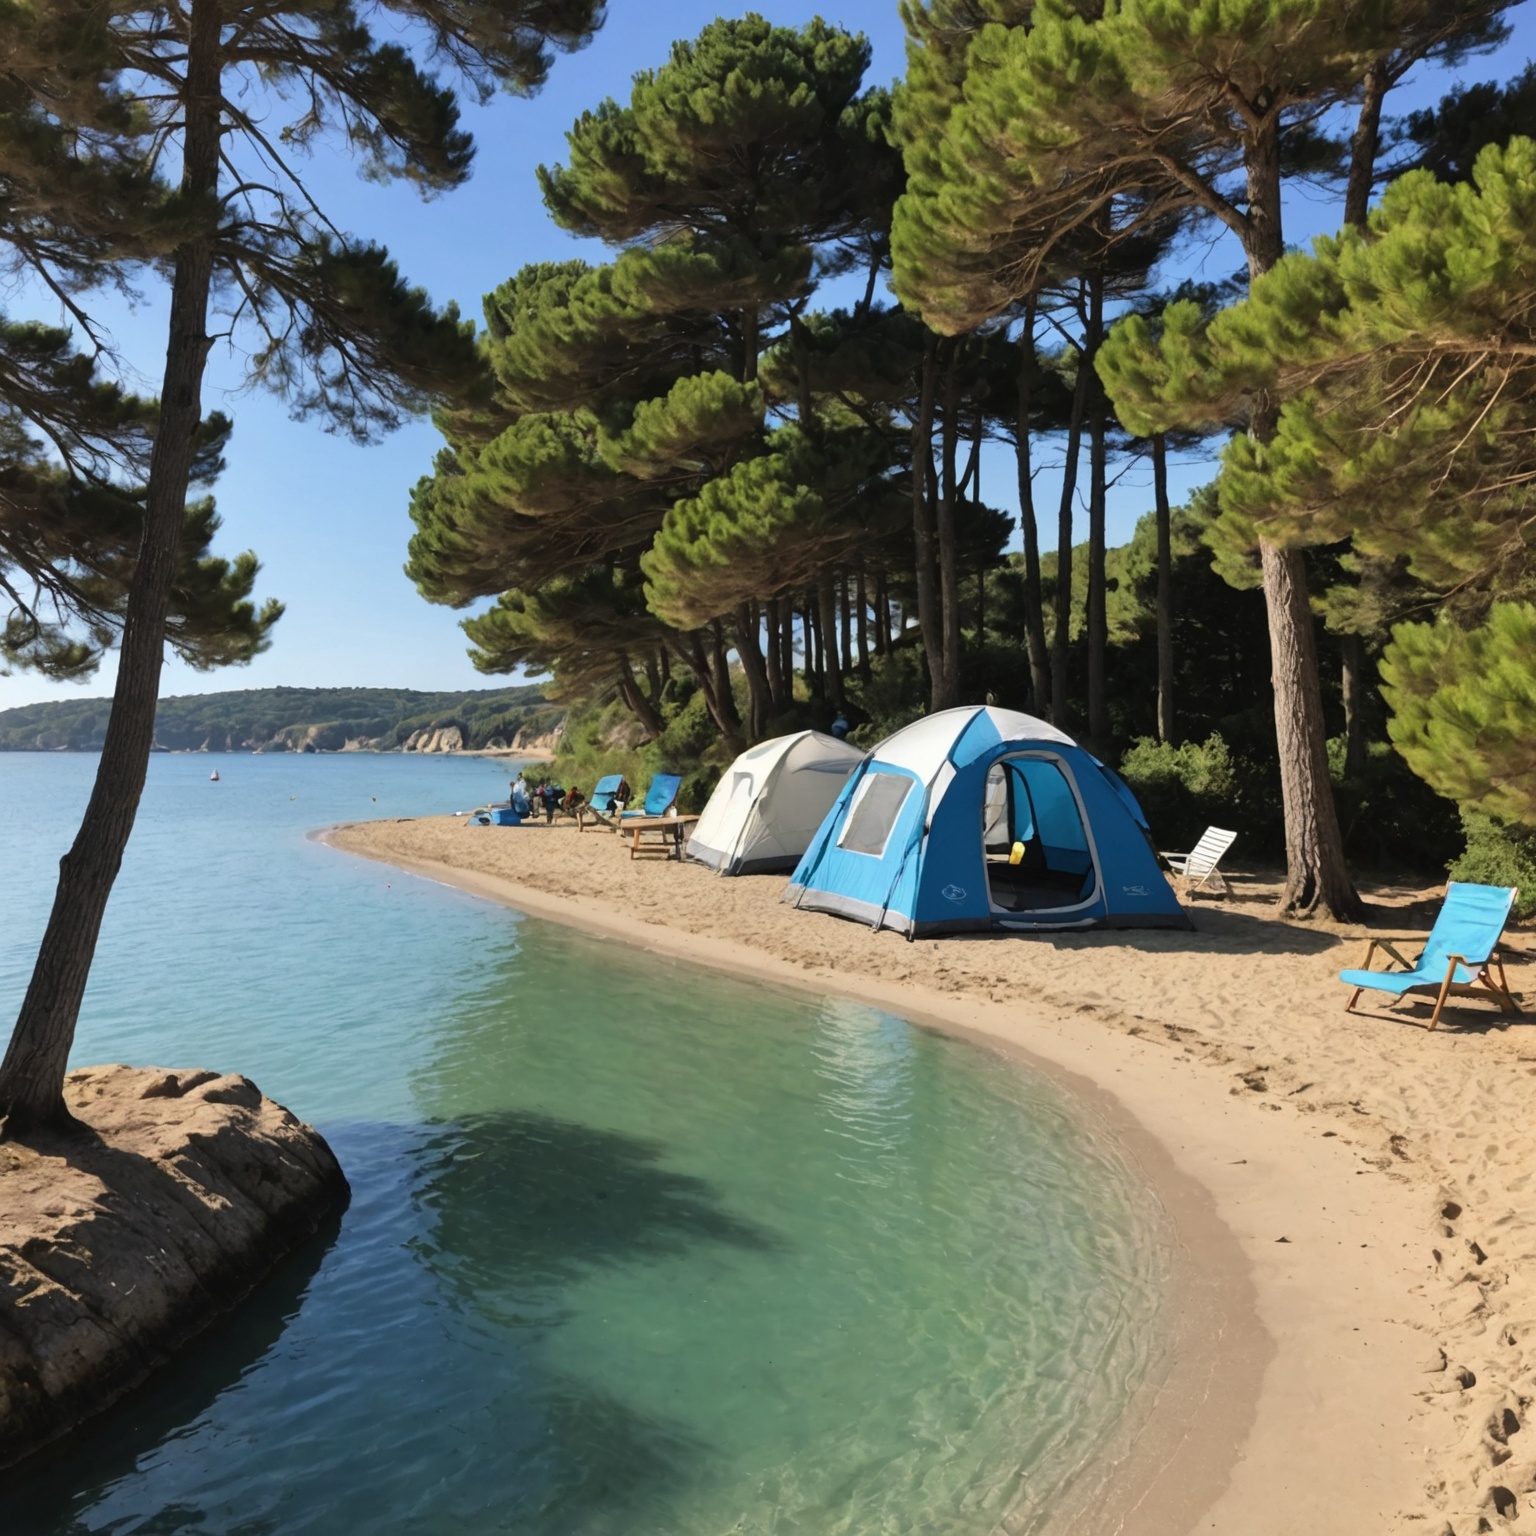 Trouvez le Camping Idéal au Bord de la Mer en France pour un Été les Pieds dans l’Eau !